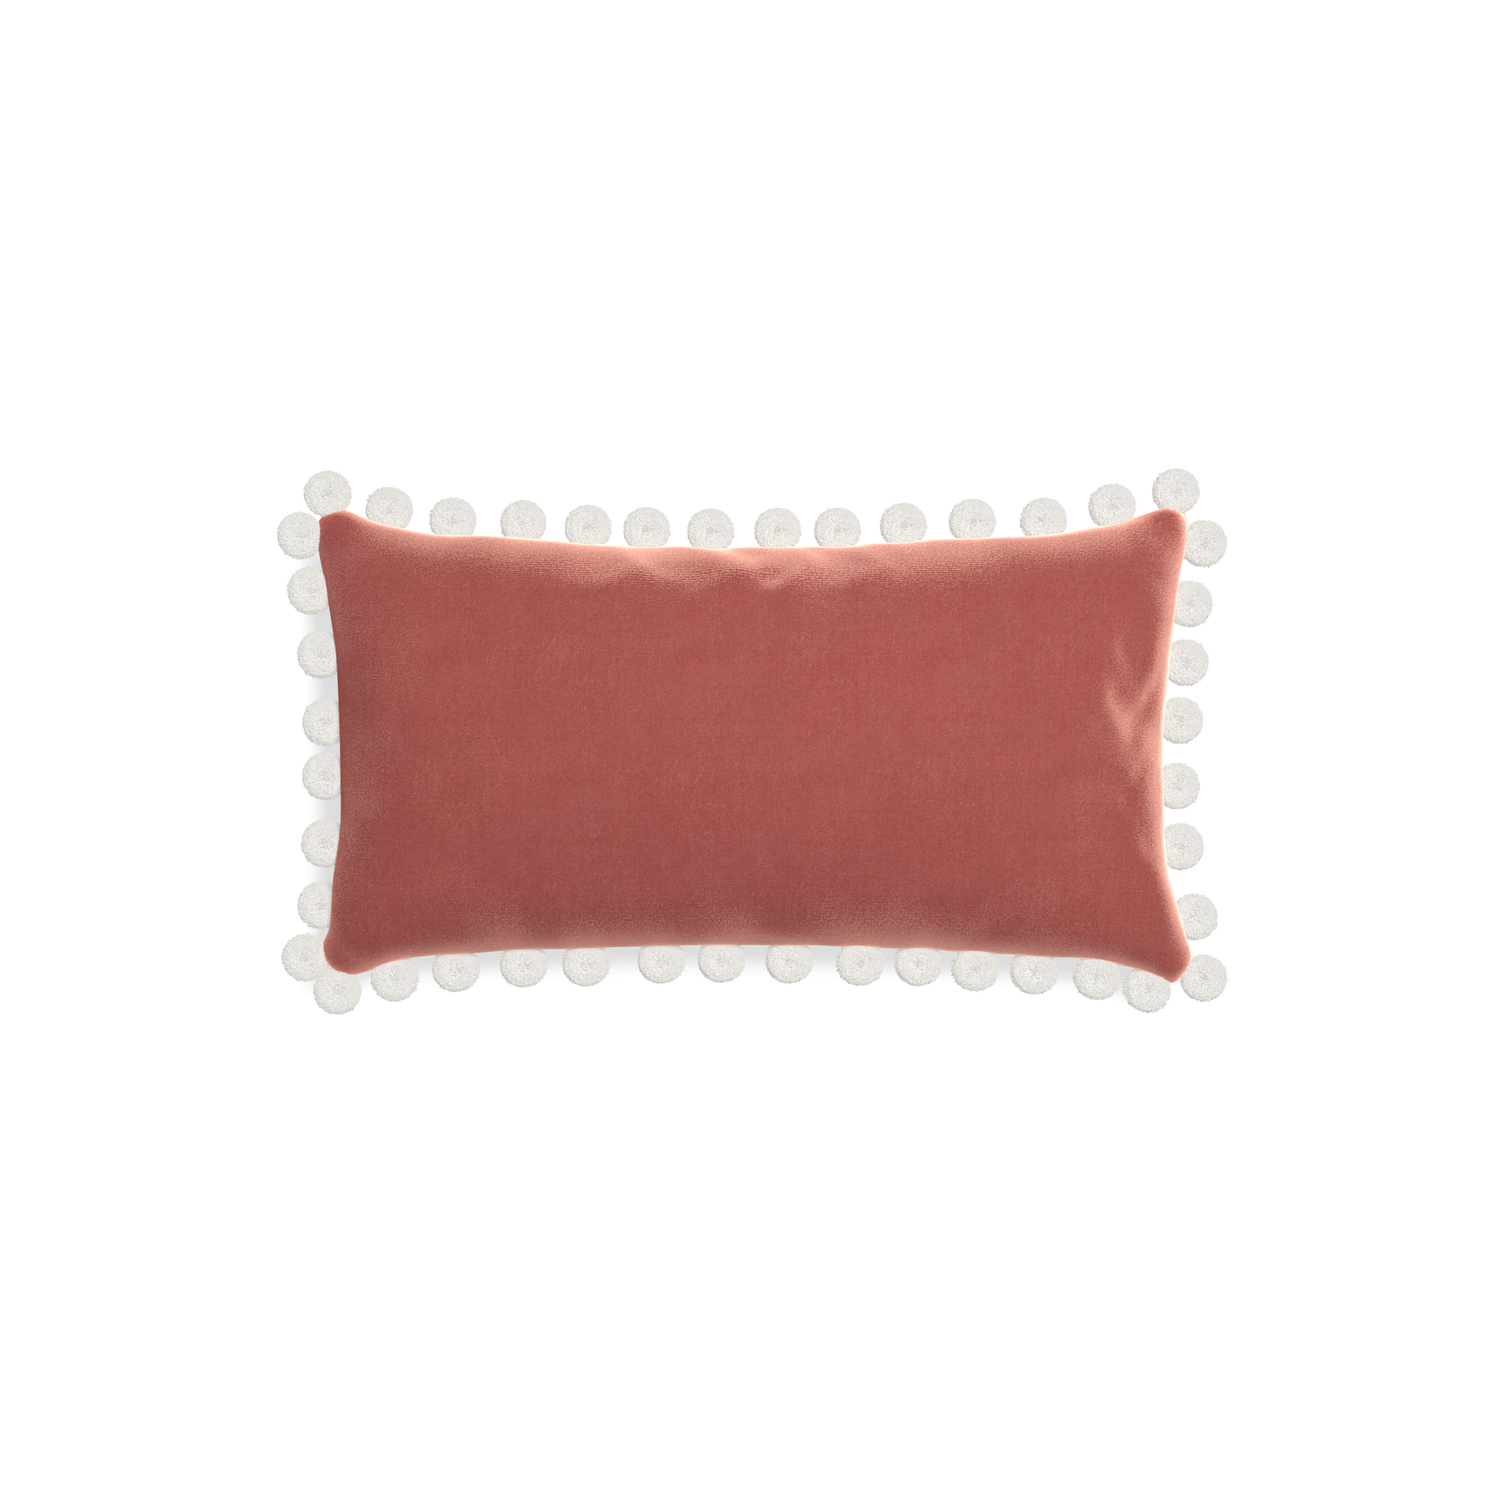 rectangle coral velvet pillow with white pom poms 